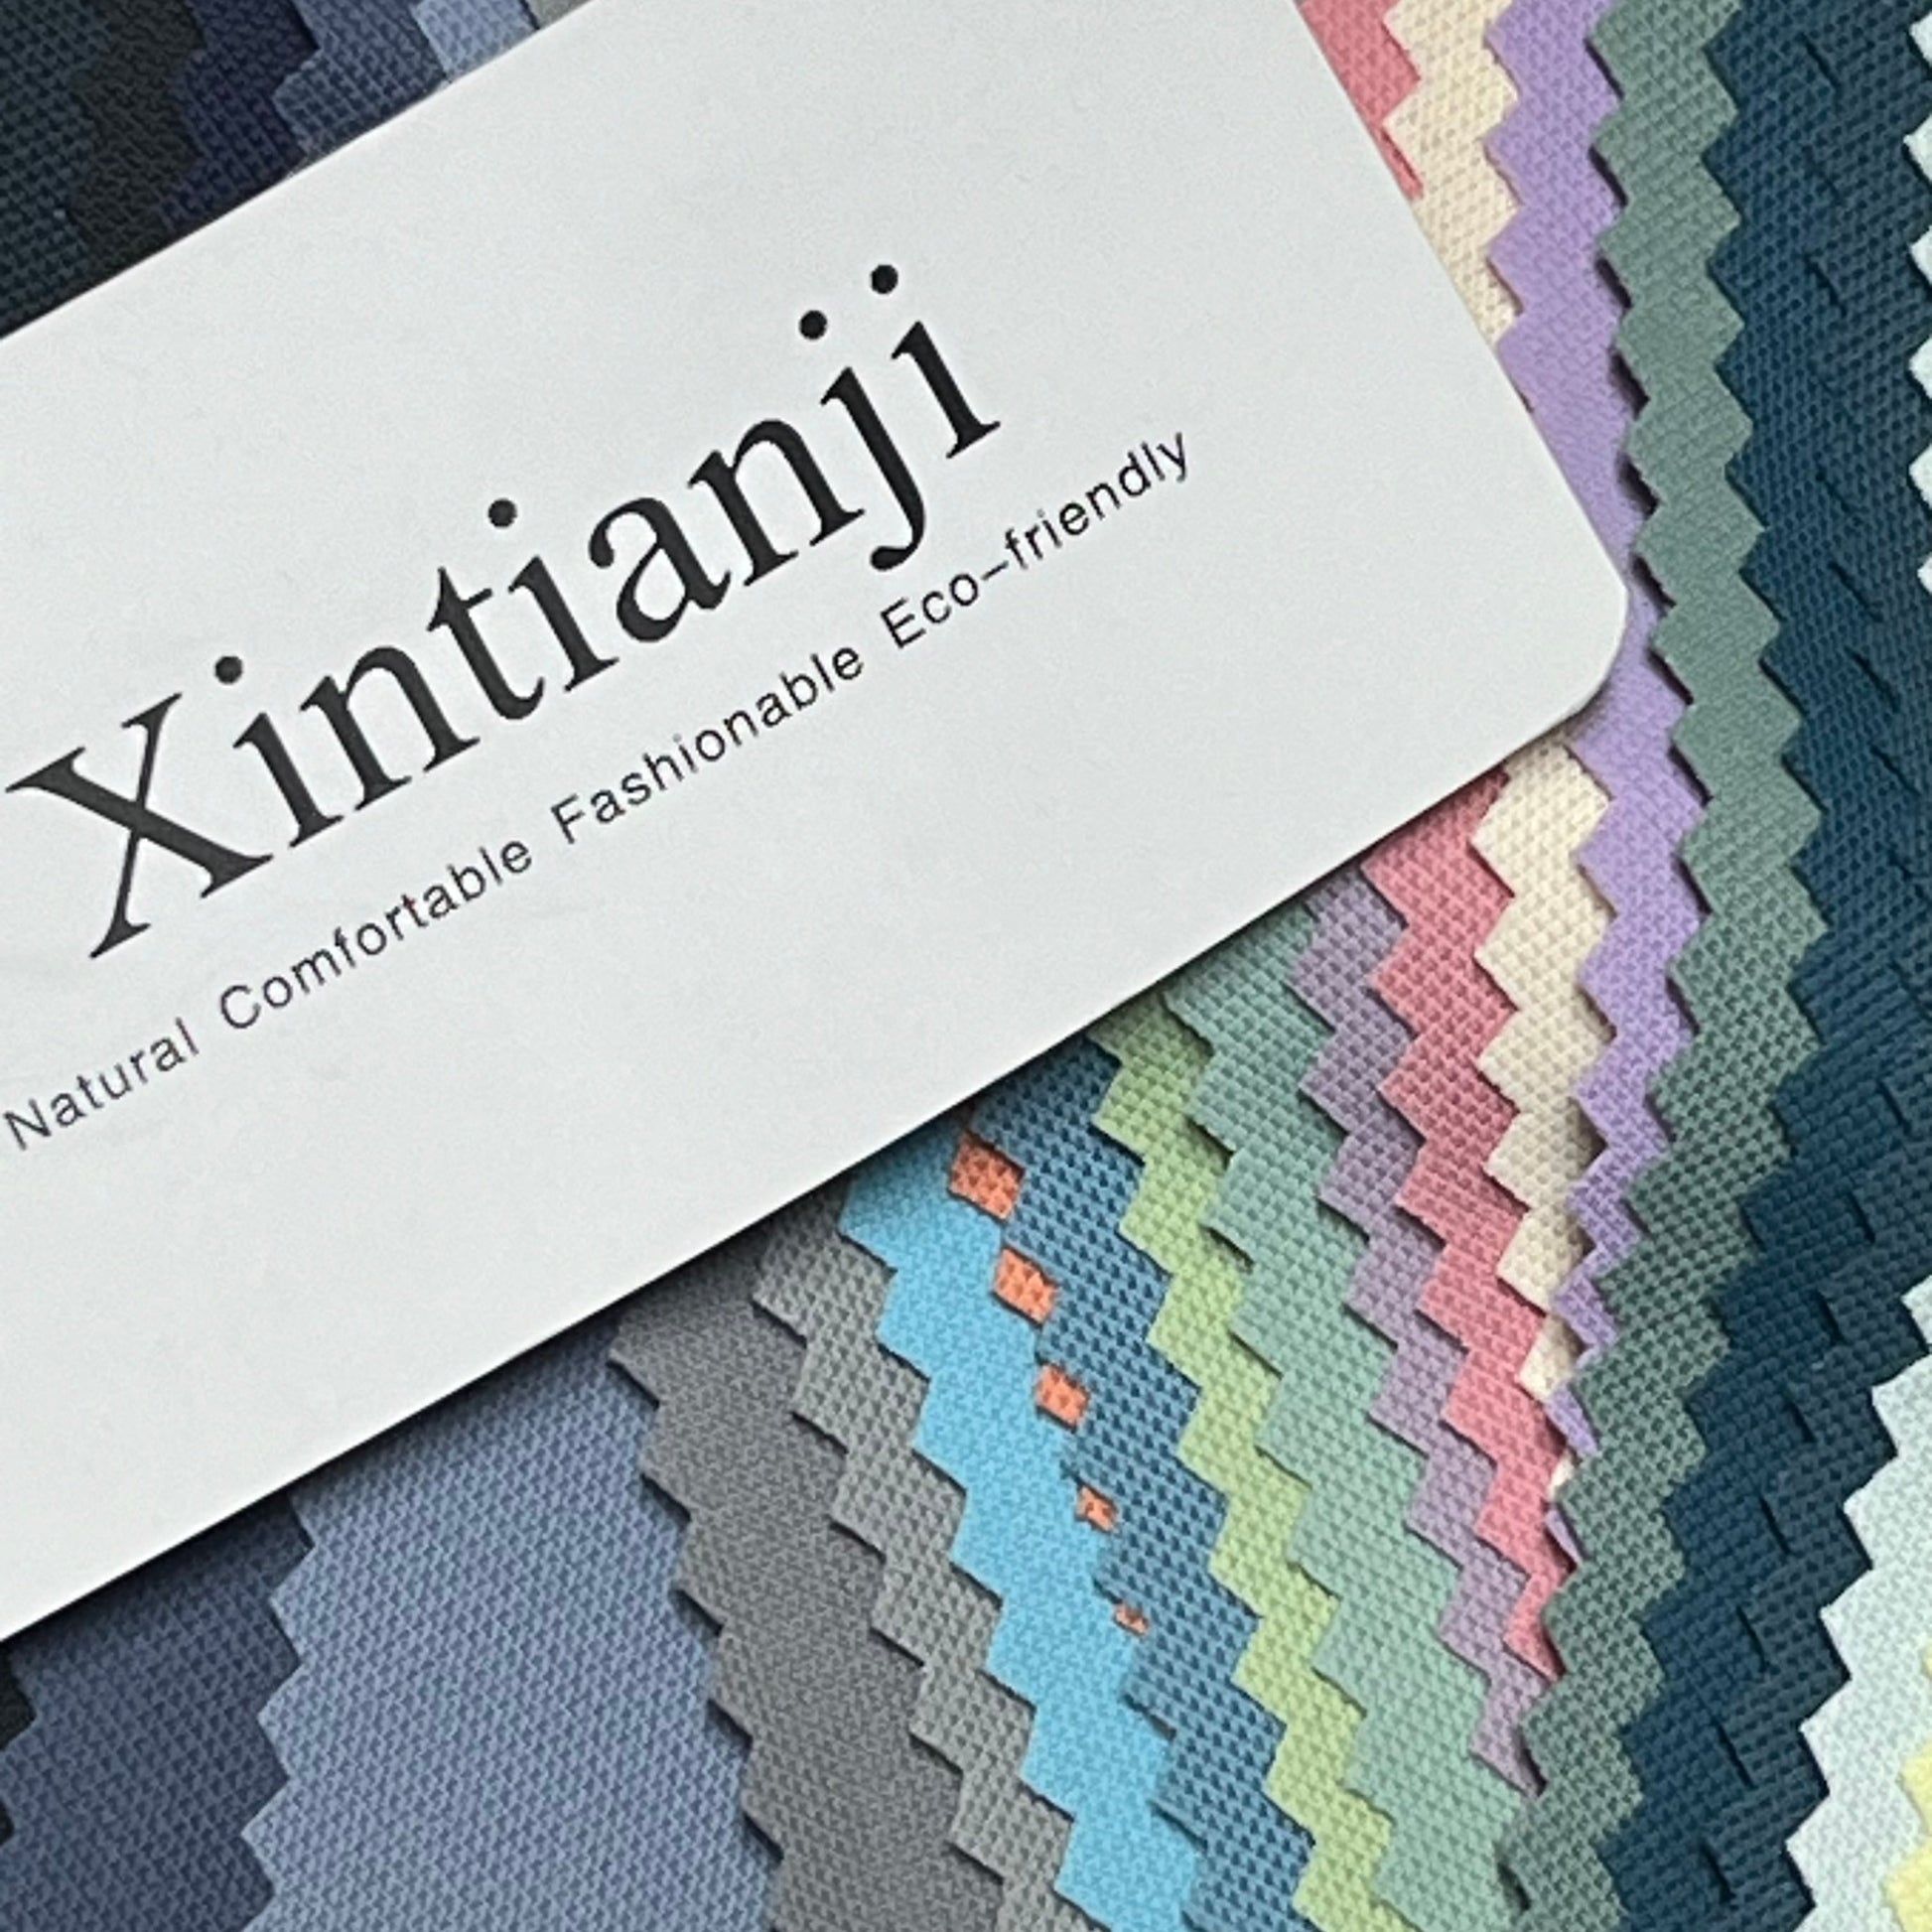 NTG Fad Xintianji Swimming Elastic fabrics for clothing